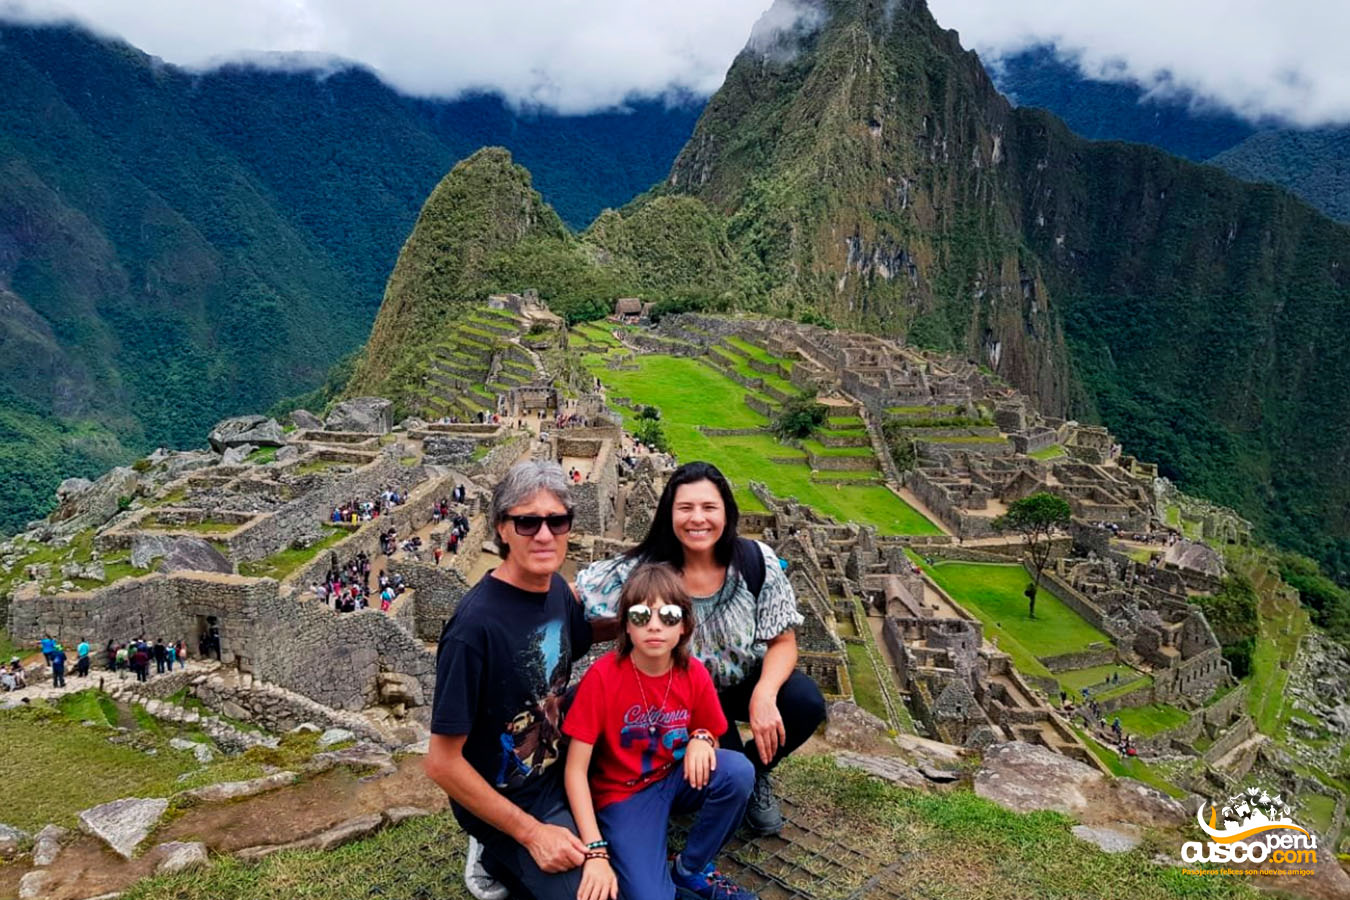 Família em Machu Picchu. Fonte: CuscoPeru.com.